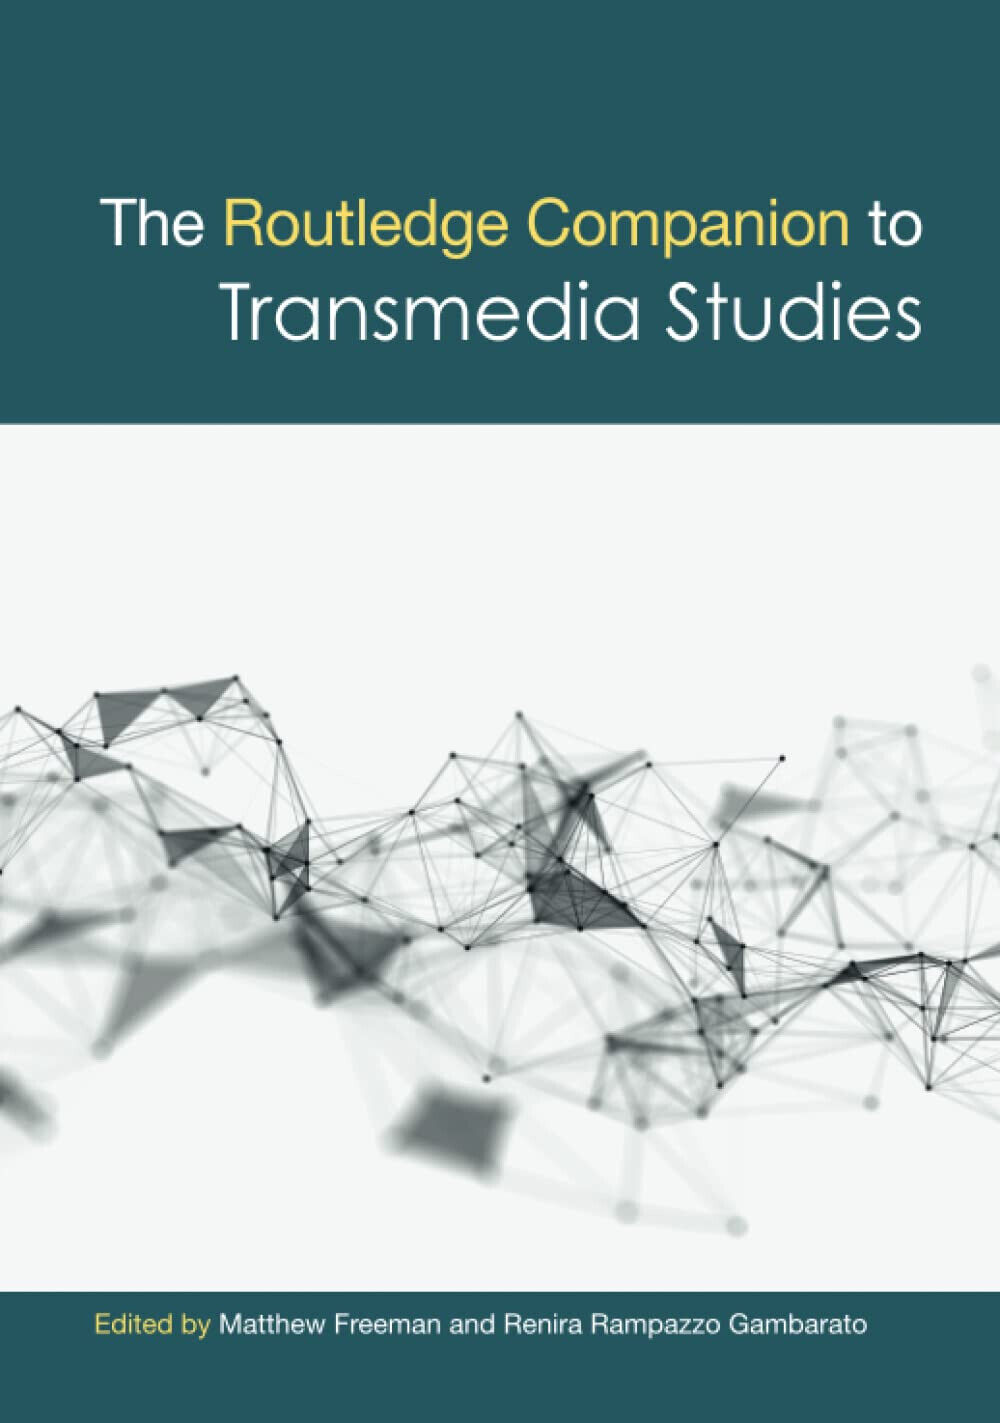 The Routledge Companion to Transmedia Studies - Matthew Freeman - 2018